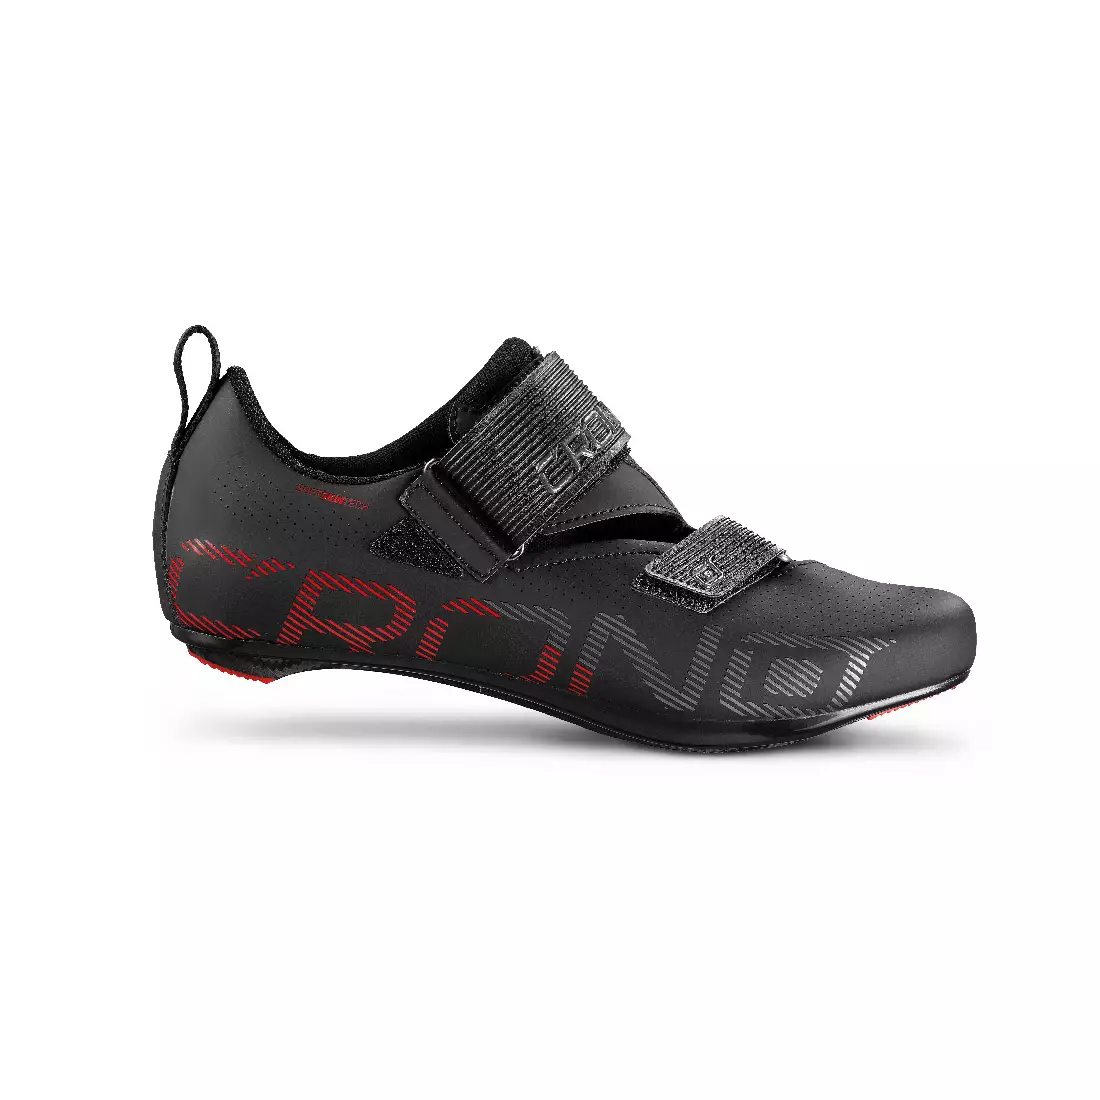 CRONO CT-1-20 Buty rowerowe triathlonowe MTB, kompozyt, czarne 